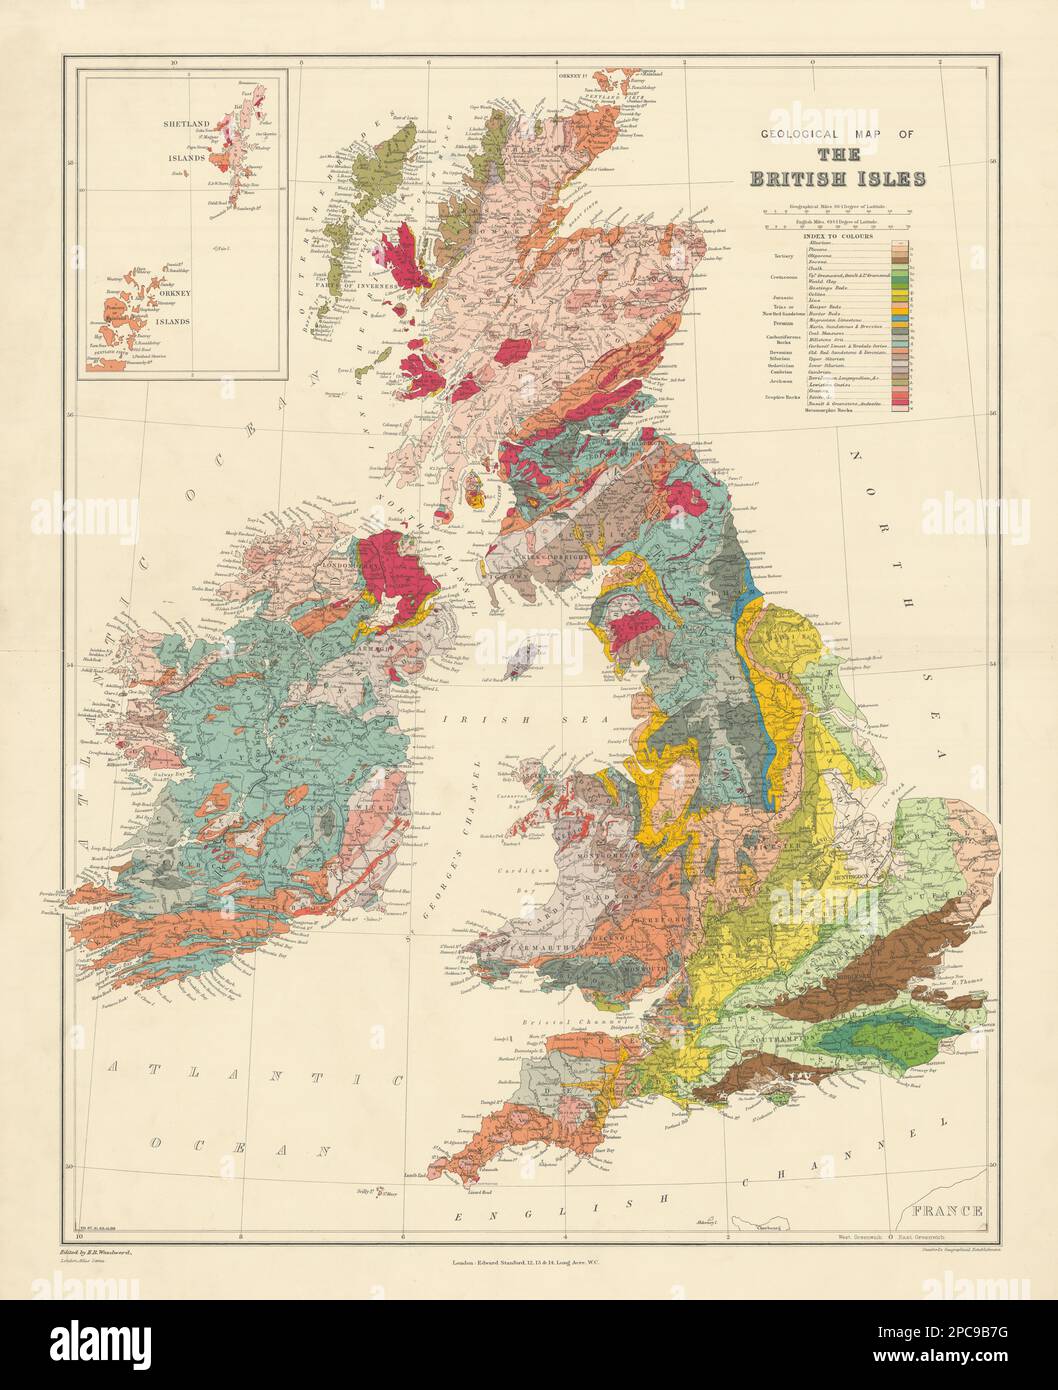 Mapa geológico de las Islas Británicas. Grande 66x53cm. STANFORD de 1904 años Foto de stock